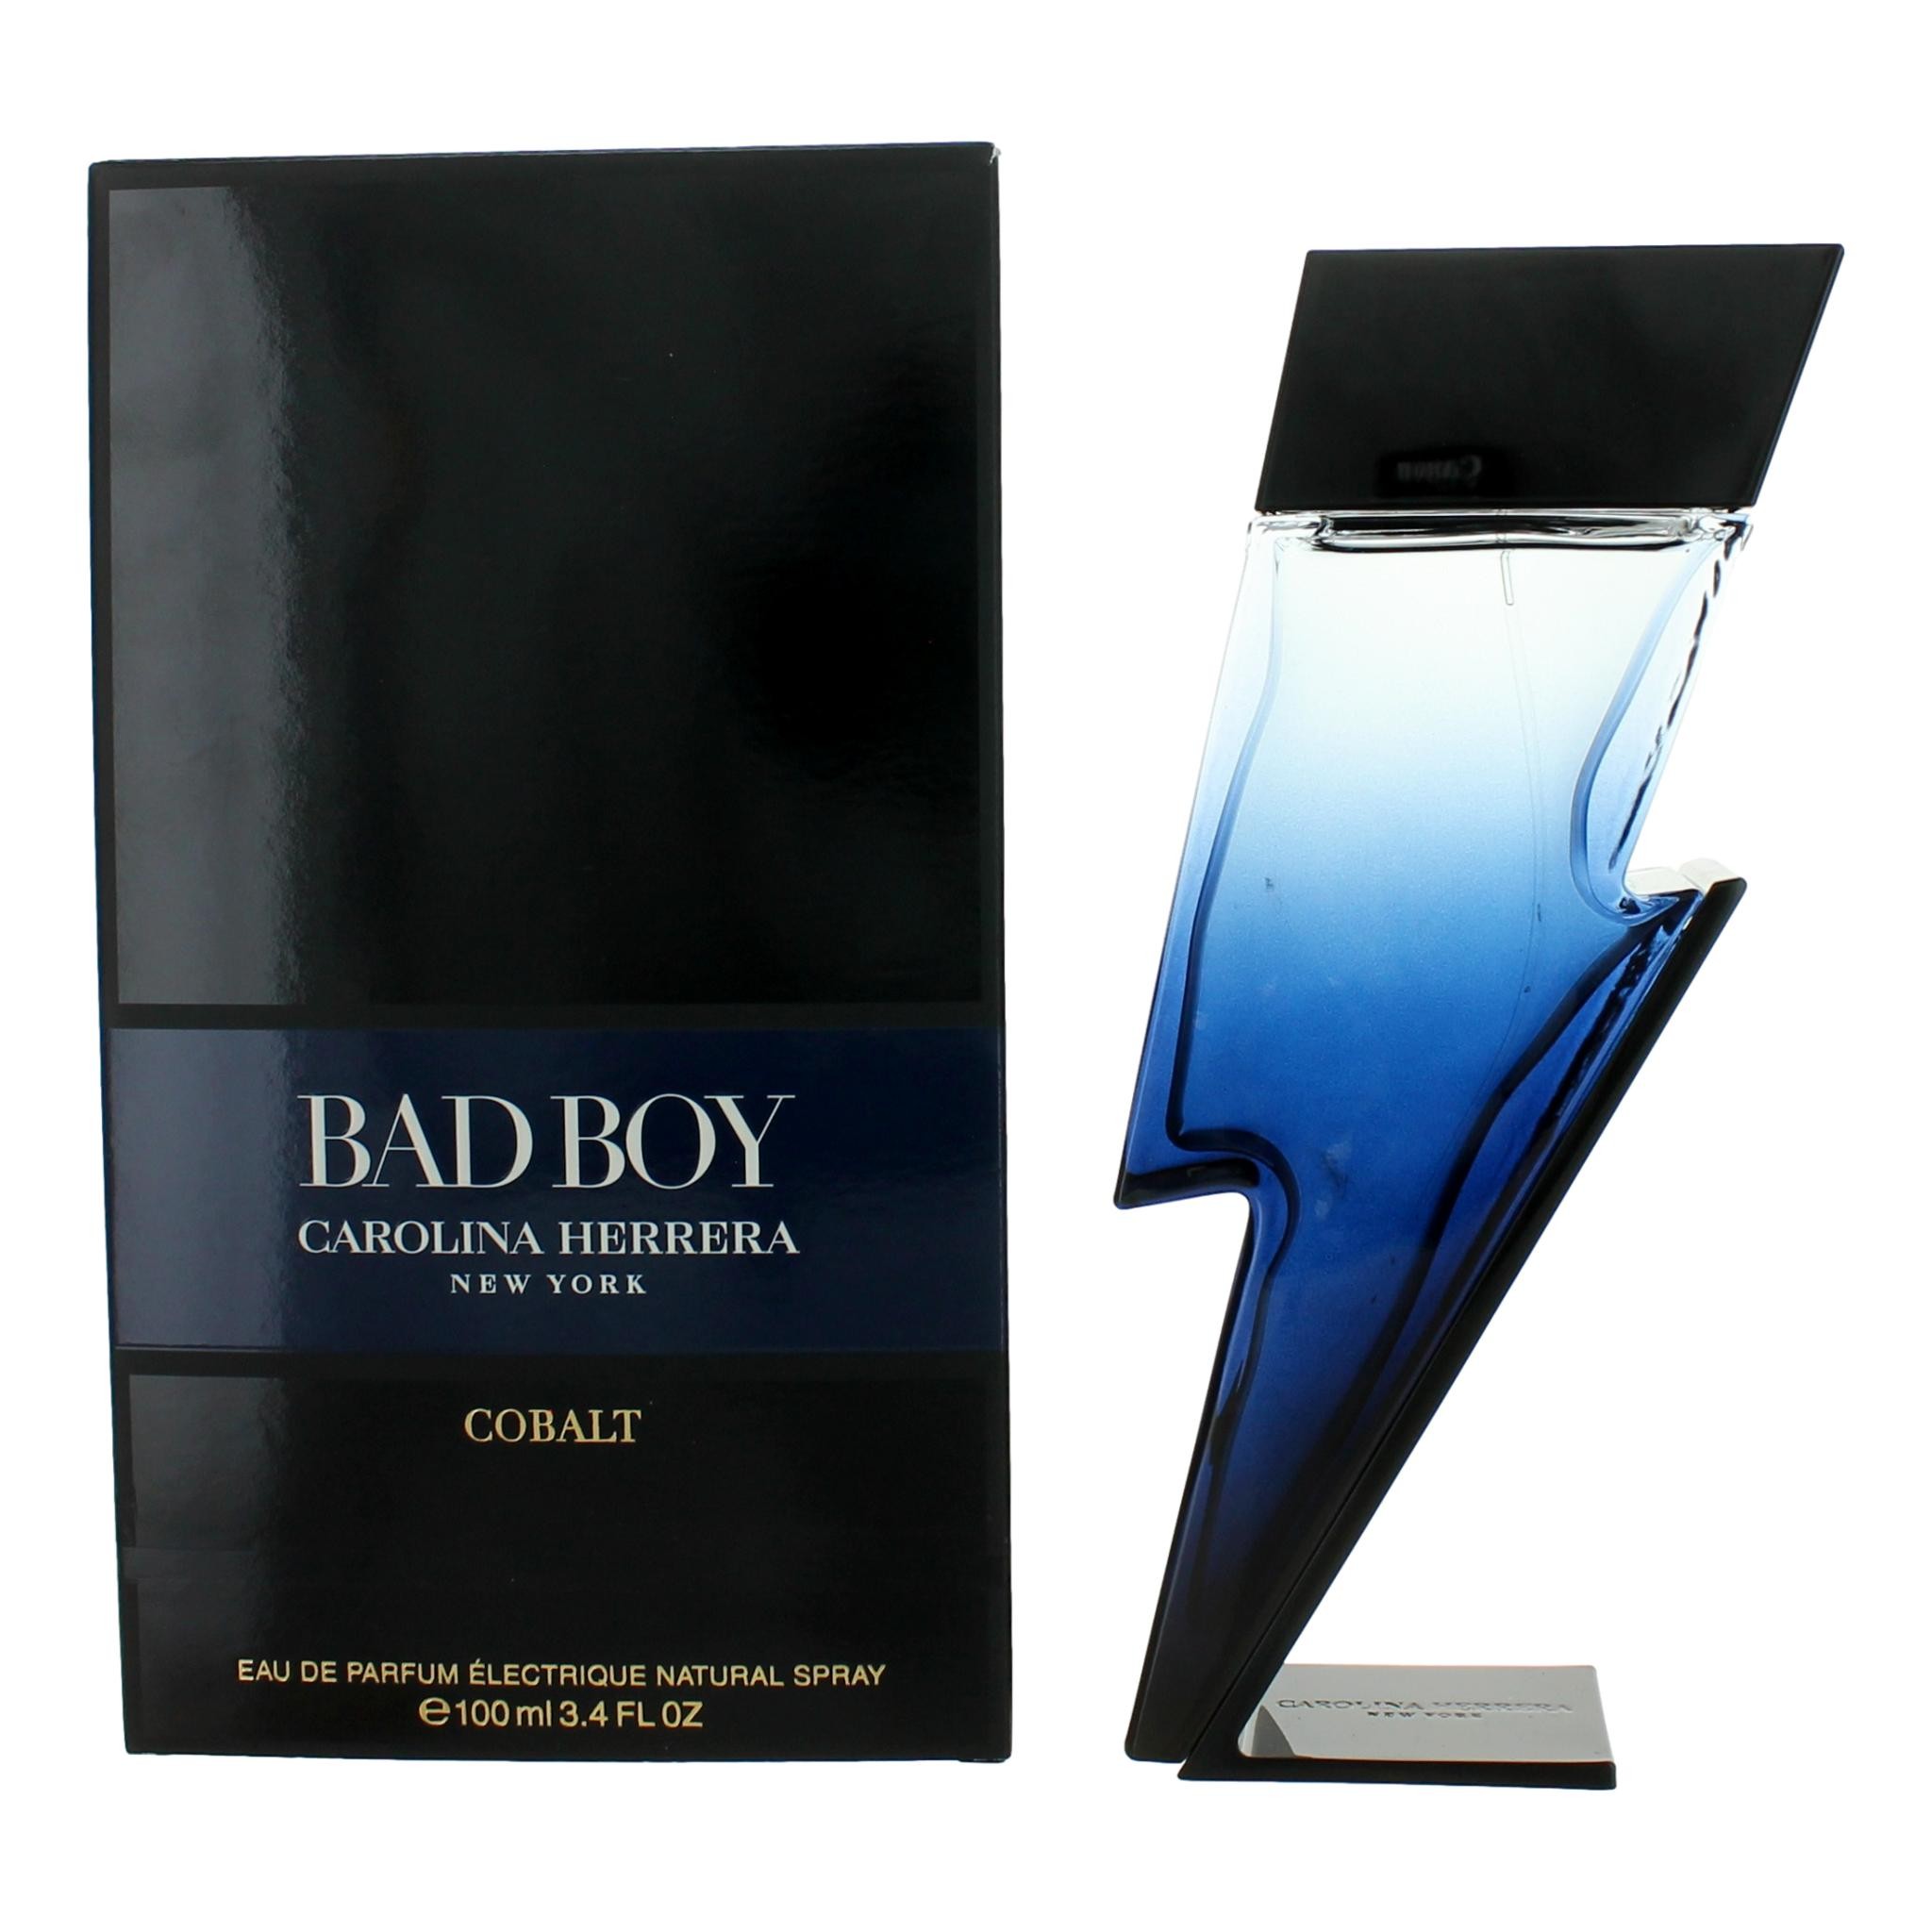 Bad Boy Cobalt by Carolina Herrera 3.4 oz Eau de Parfum Spray for Men